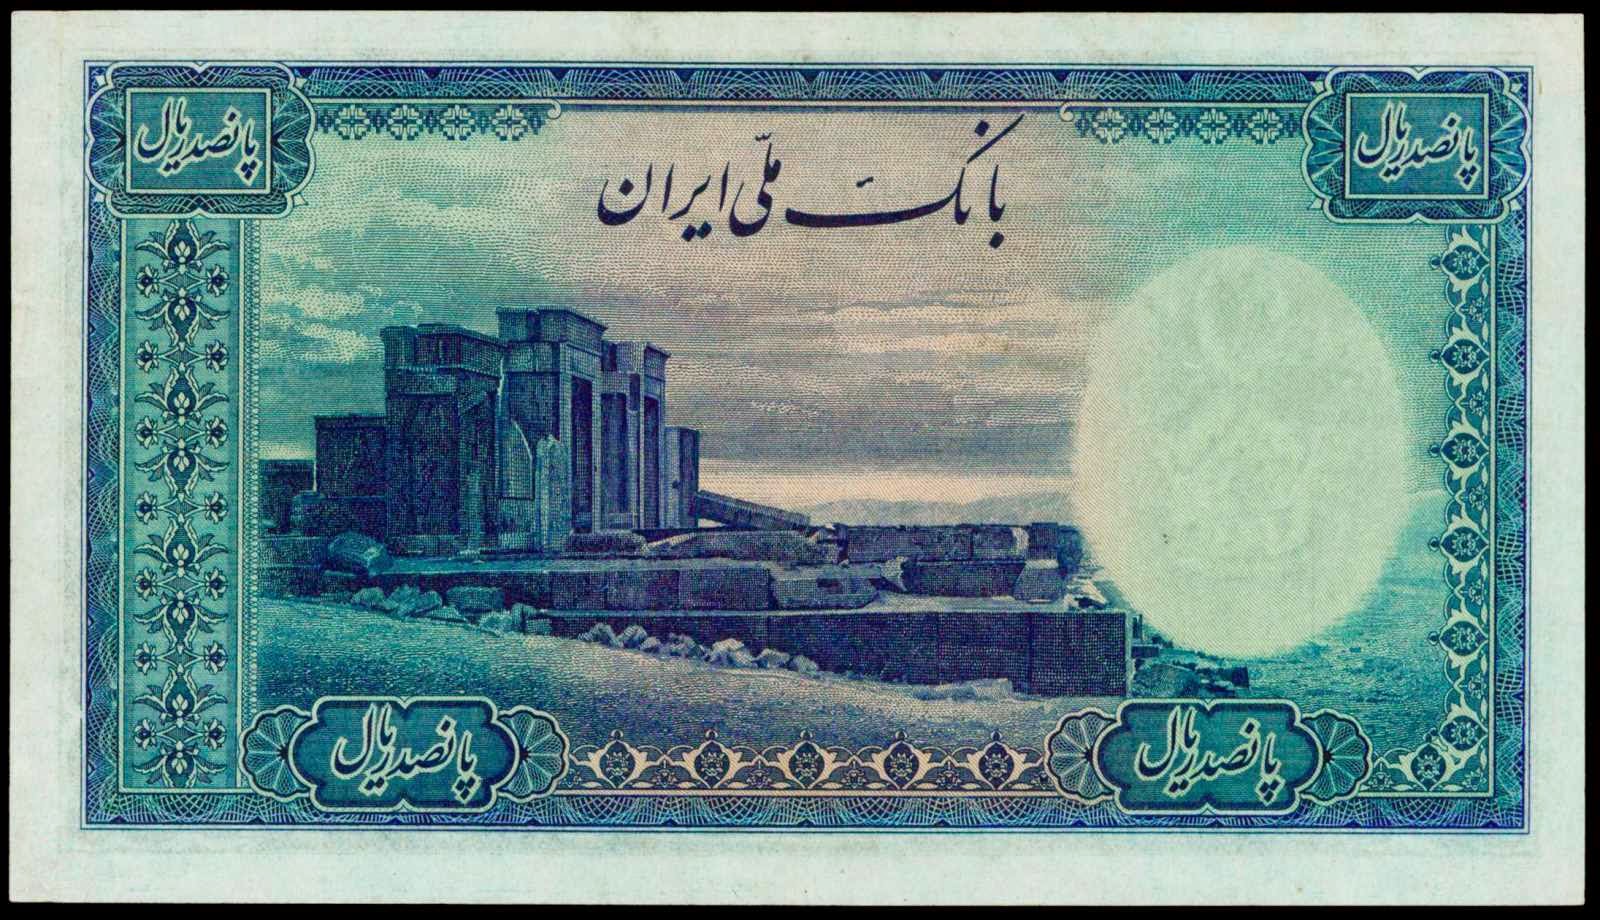 Iran 500 Rials banknote 1944 Tachara Palace of king Darius I the Great in Persepolis